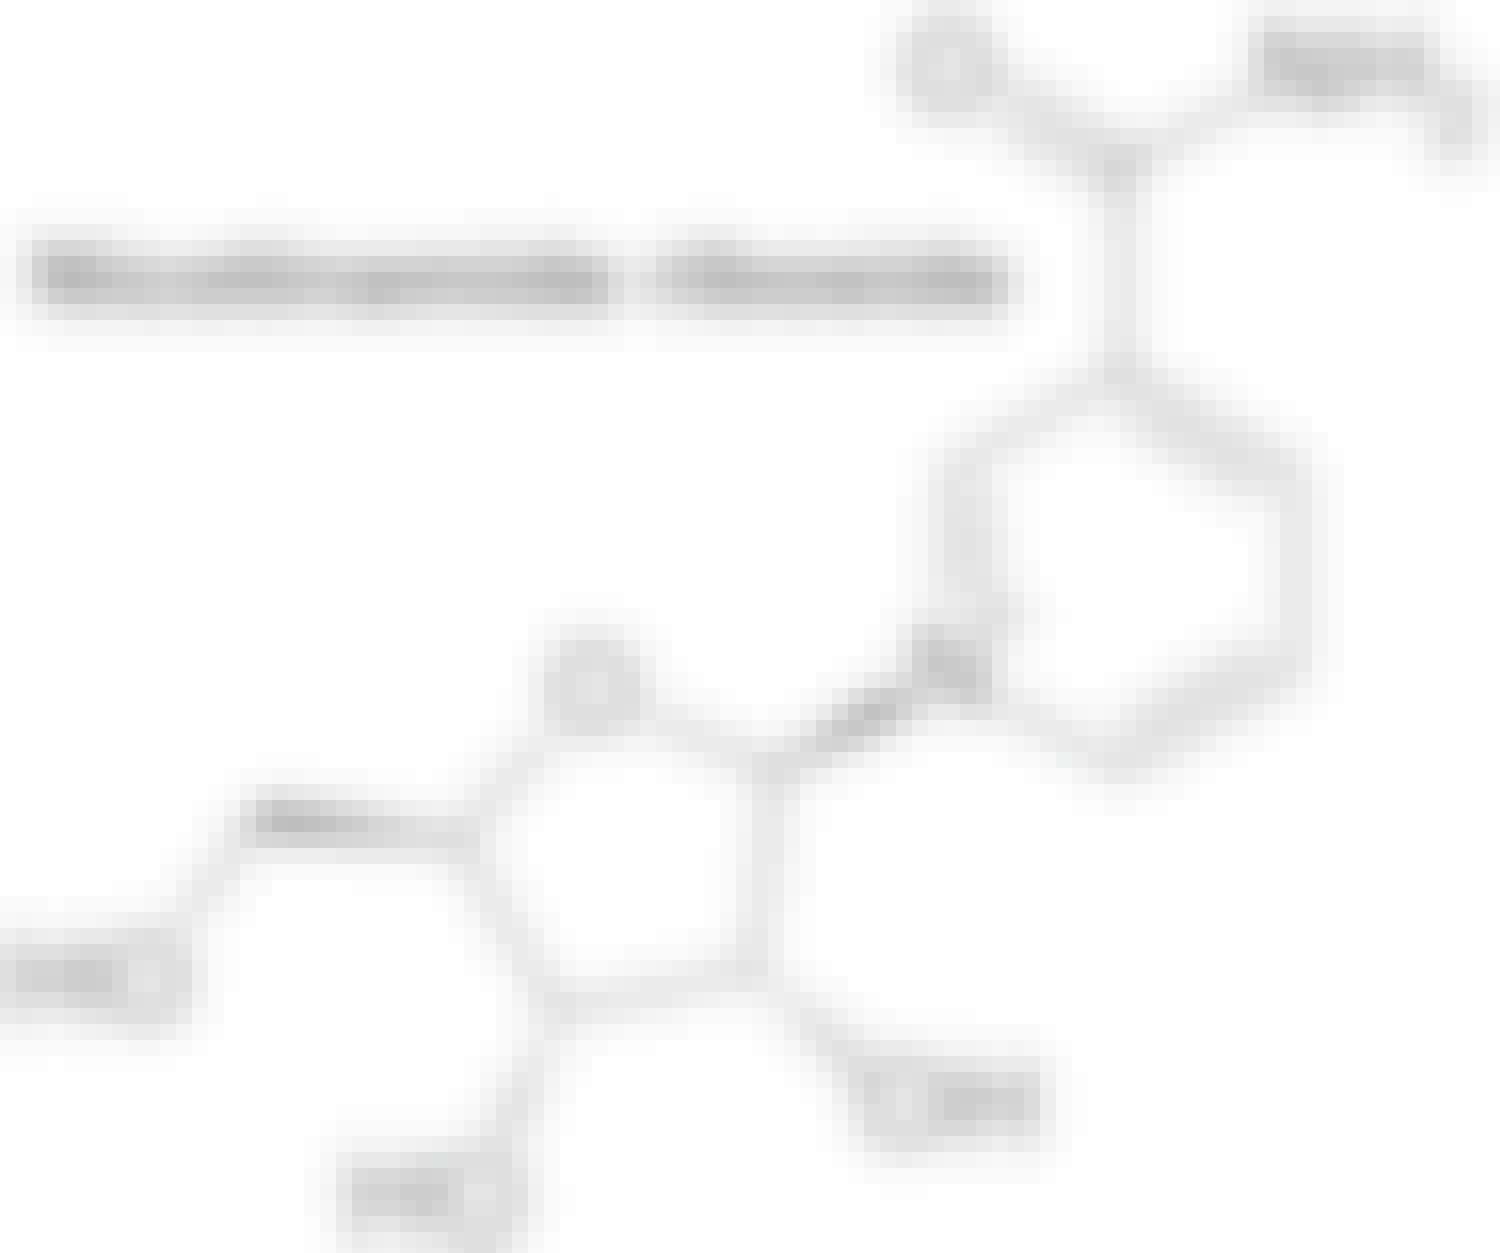 nicotinamide riboside (NR)